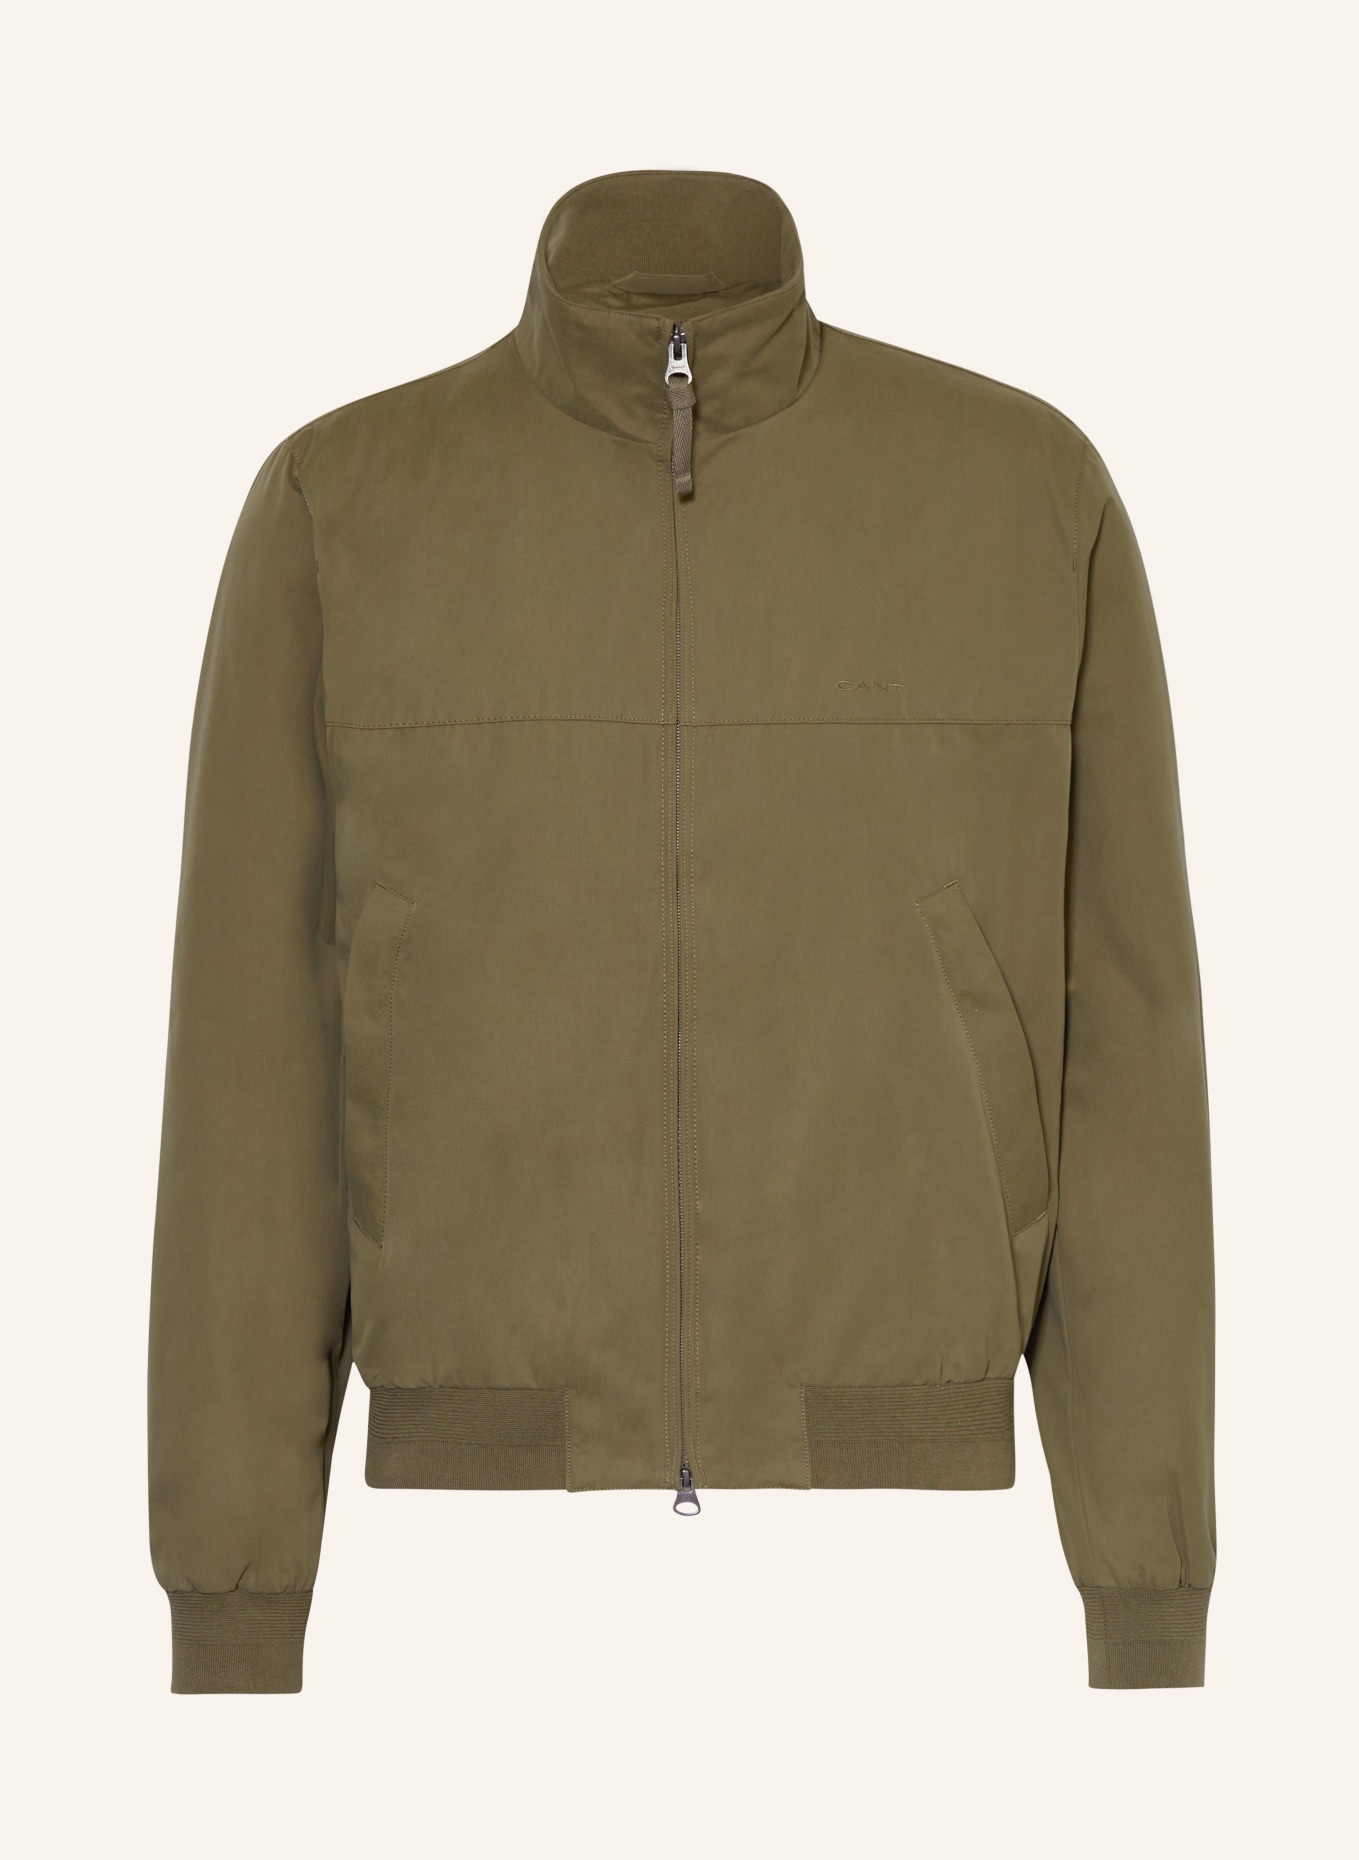 GANT Bomber jacket, Color: OLIVE (Image 1)